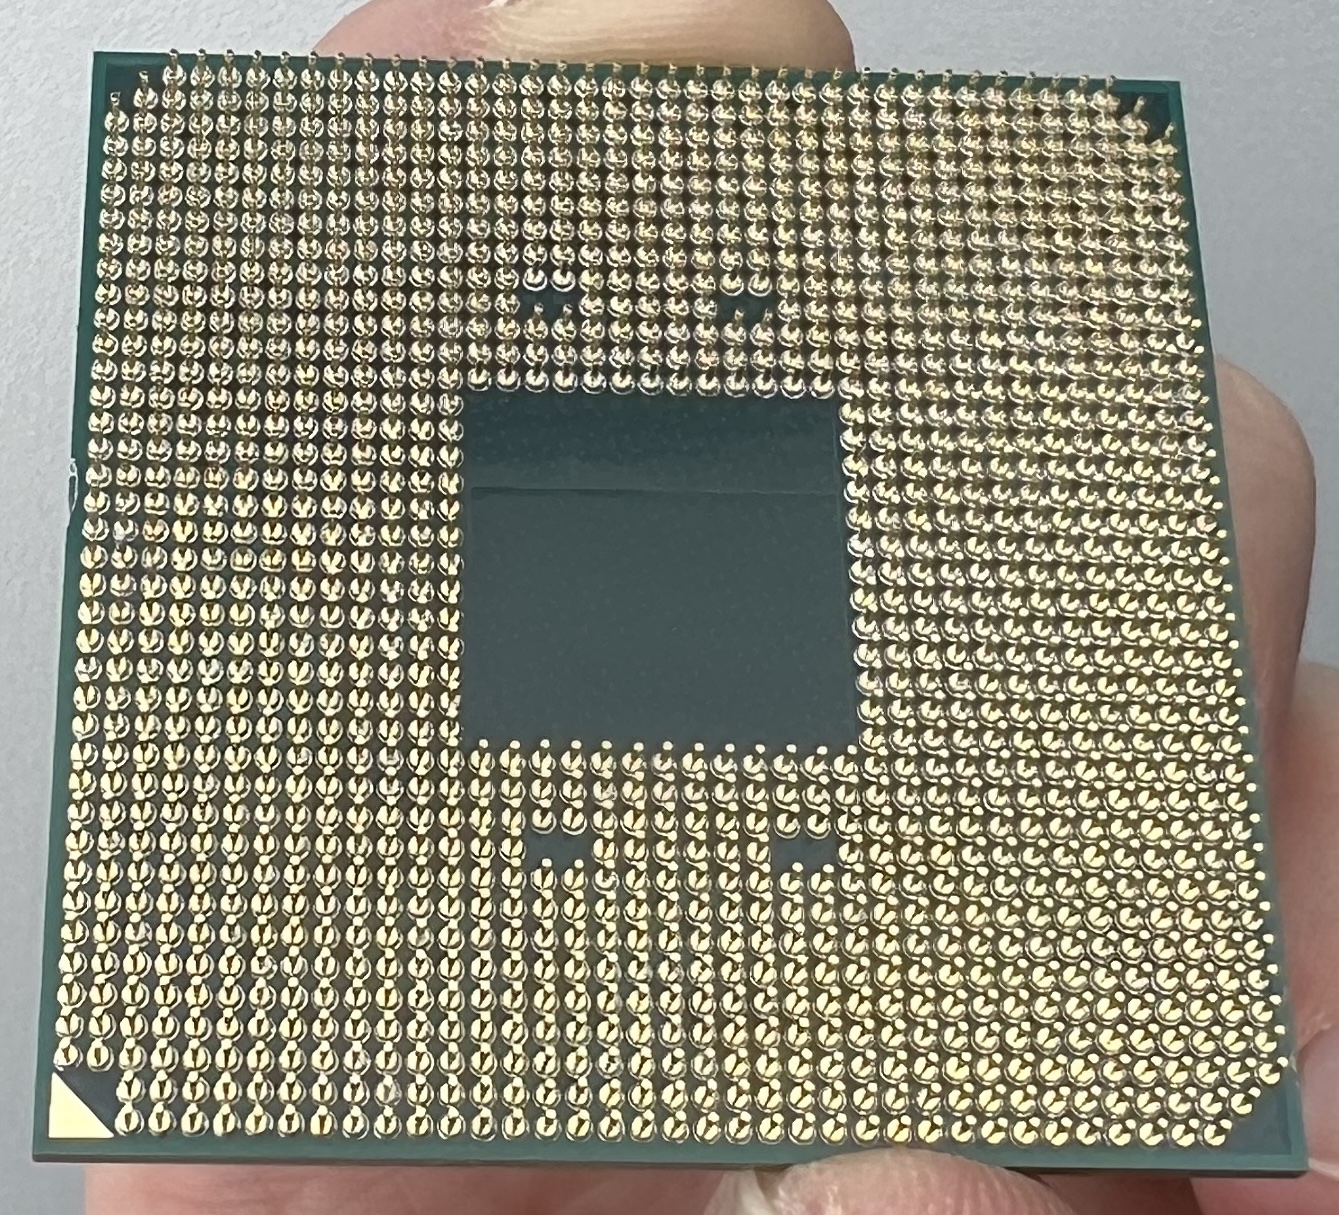 CPU1.jpg